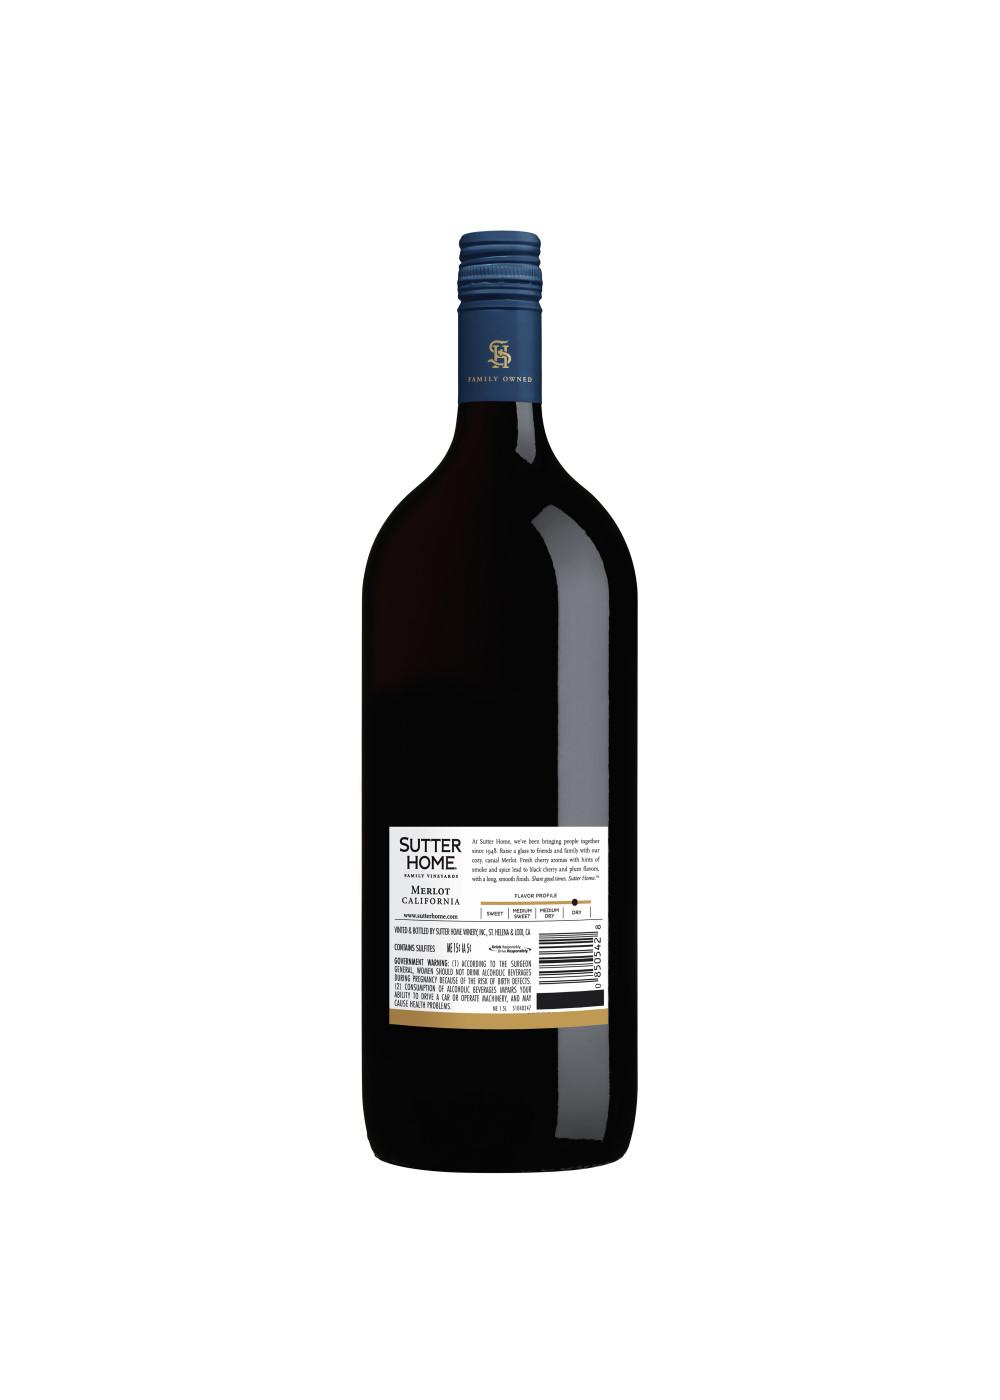 Sutter Home Family Vineyards Merlot Wine; image 4 of 5